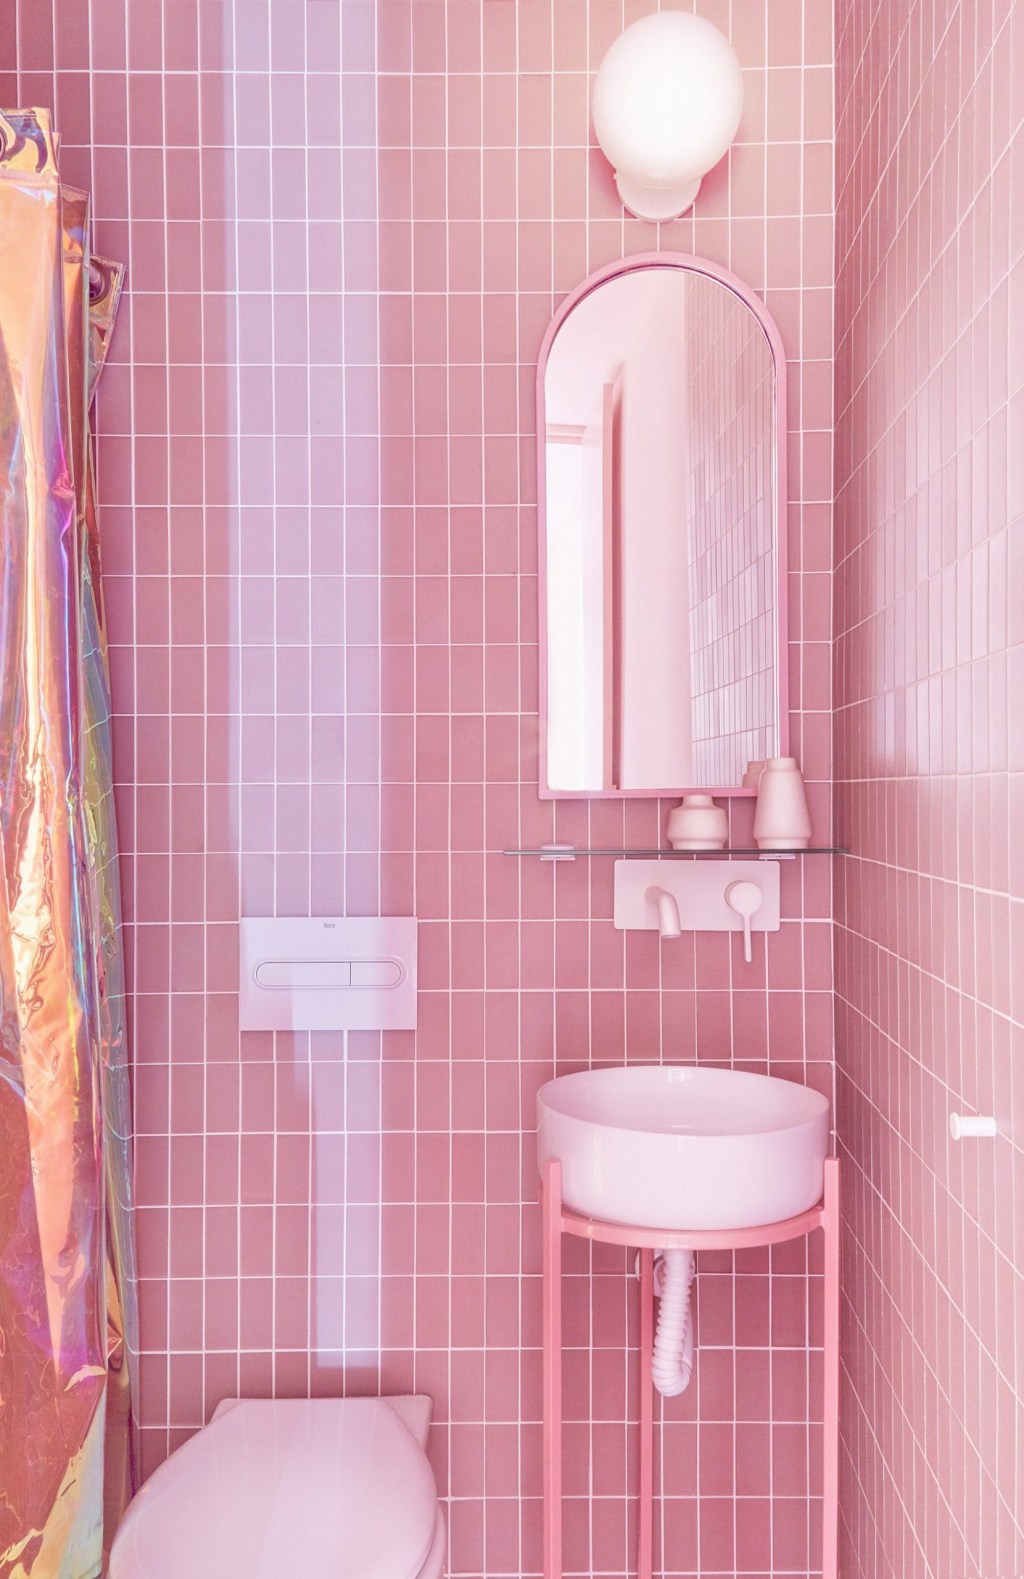 Banheiro com ladrilhos rosa